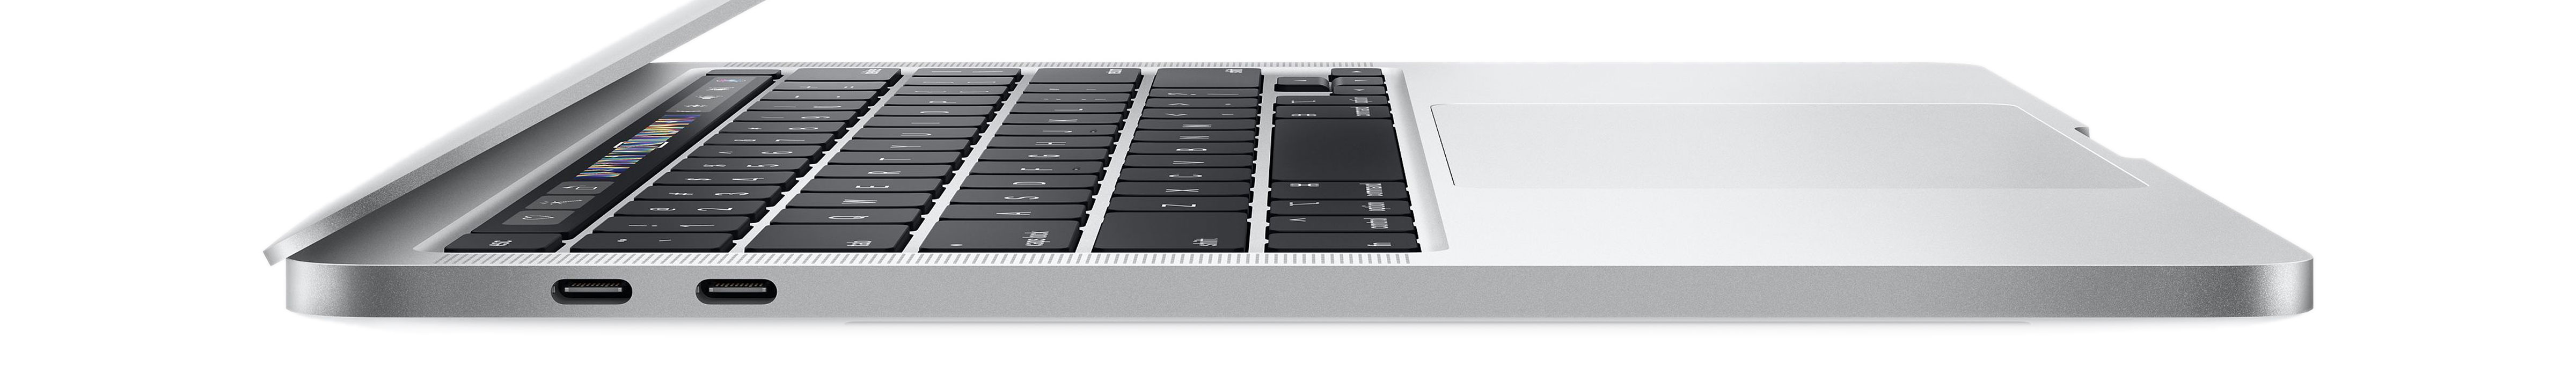 MacBook Pro 16-inch - nieuw met upgrades